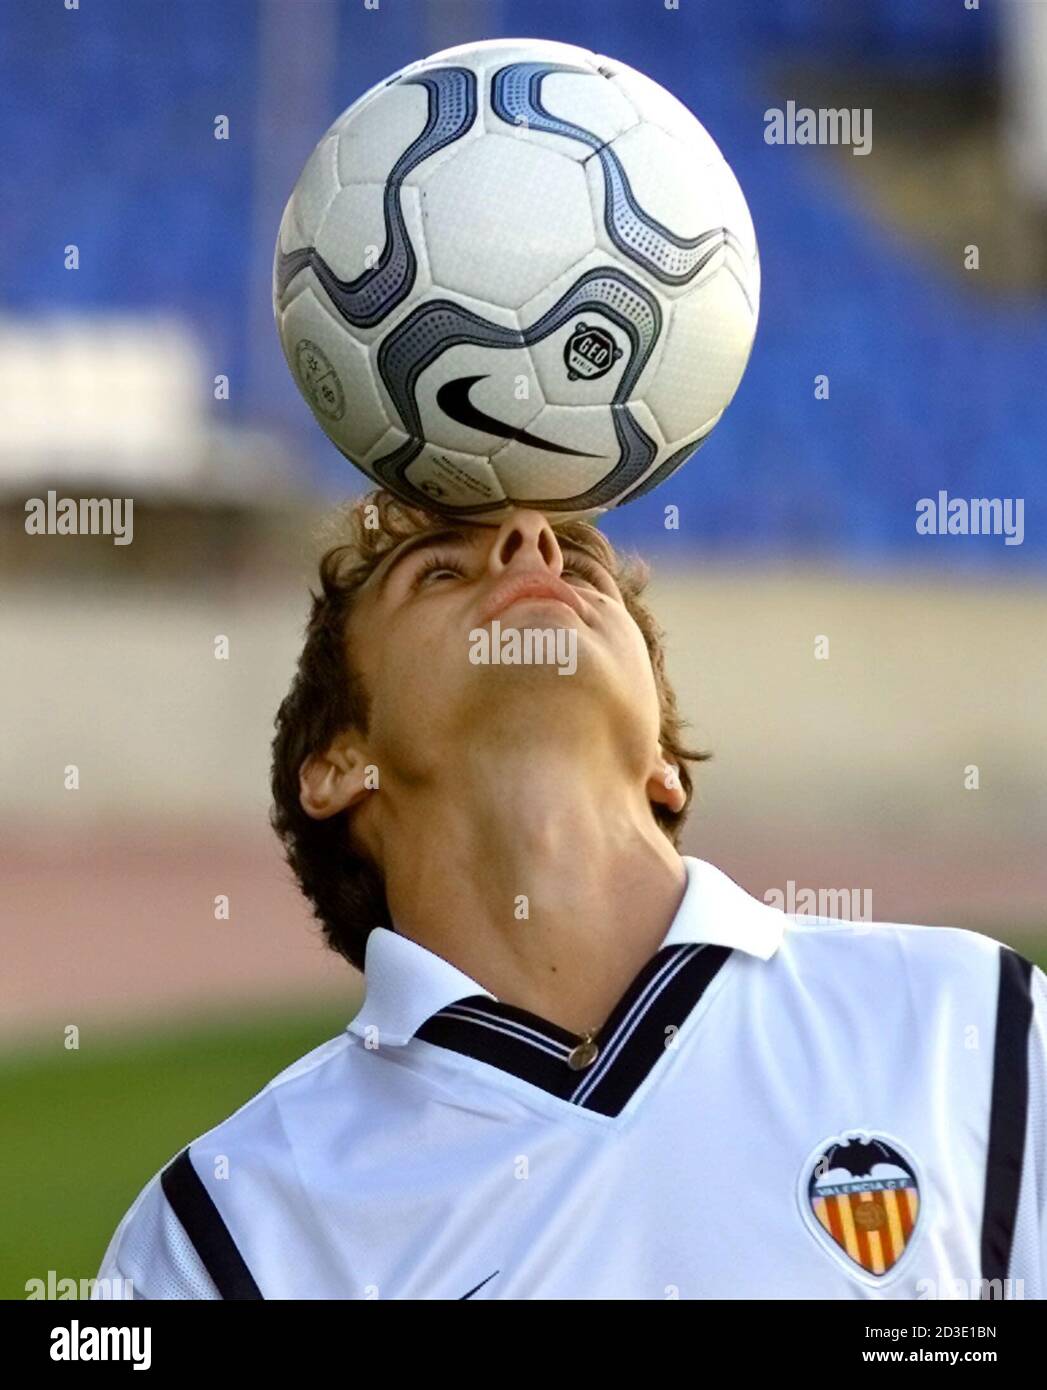 Pablo Aimar, star du football argentin, équilibre le ballon sur sa tête  lors de sa cérémonie de présentation au stade Mestalla de Valence, le 31  janvier 2001. Aimar, ancien joueur du plateau